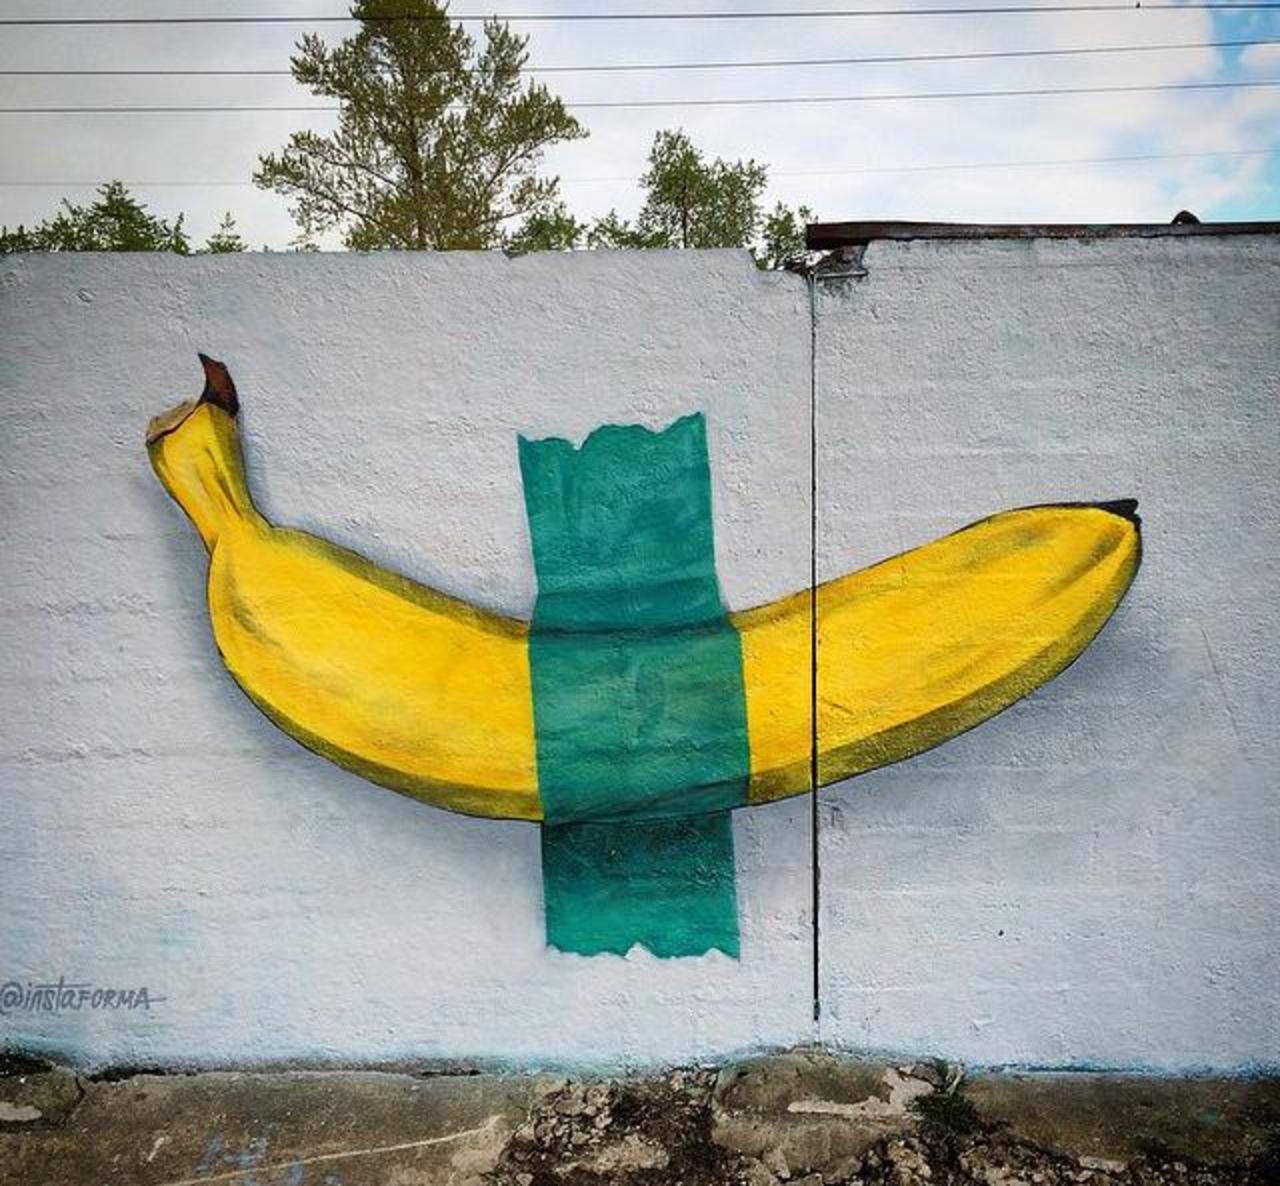 New Street Art by Ches 

#art #arte #graffiti #streetart http://t.co/qa9s8xlr5u